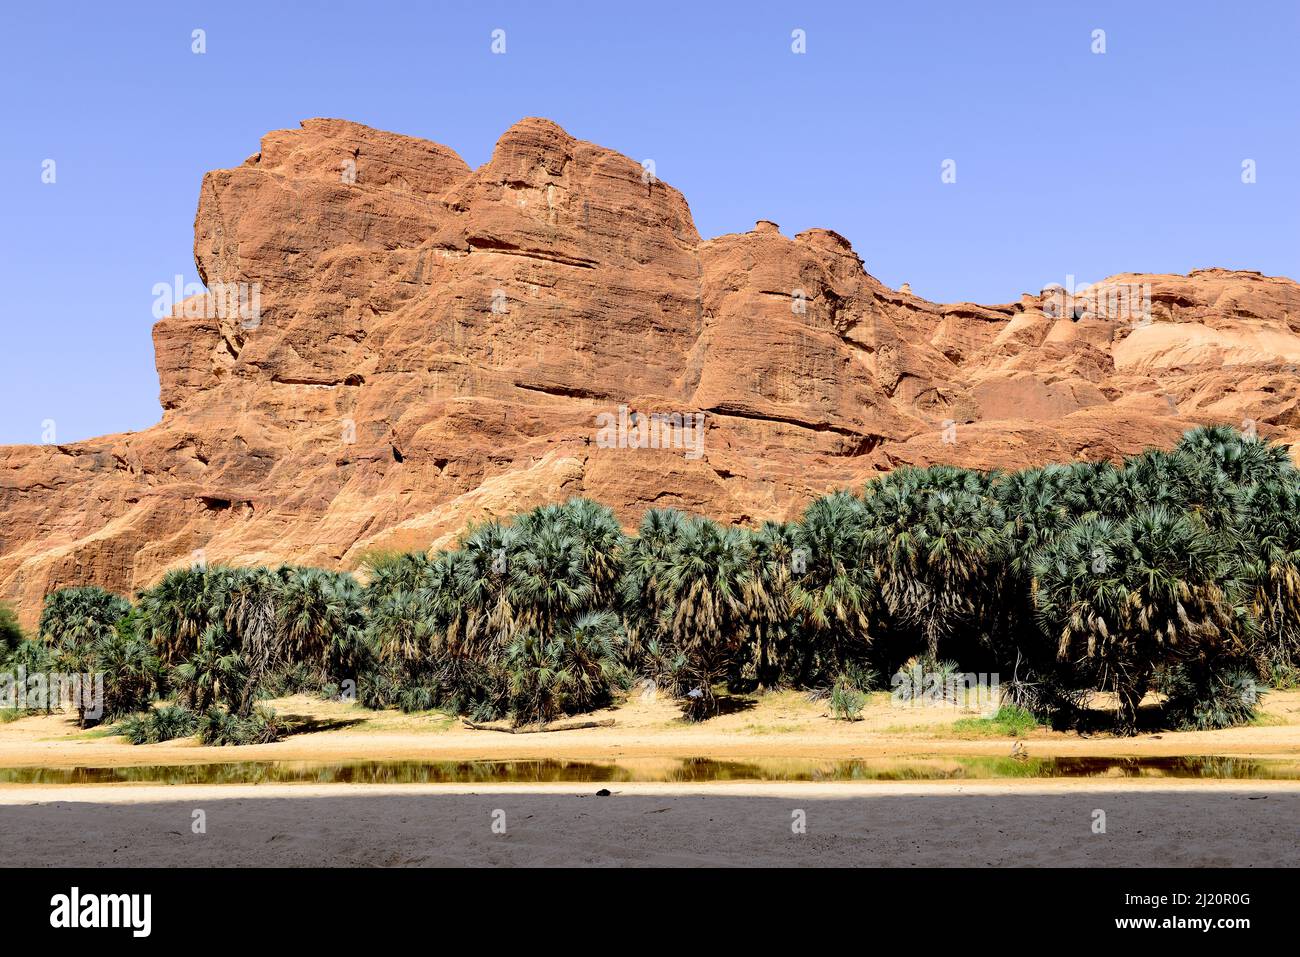 Erodierte Sandsteinfelsen und Bäume im Natur- und Kulturreservat Ennedi, UNESCO-Weltkulturerbe, Sahara-Wüste, Tschad. September 2019. Stockfoto